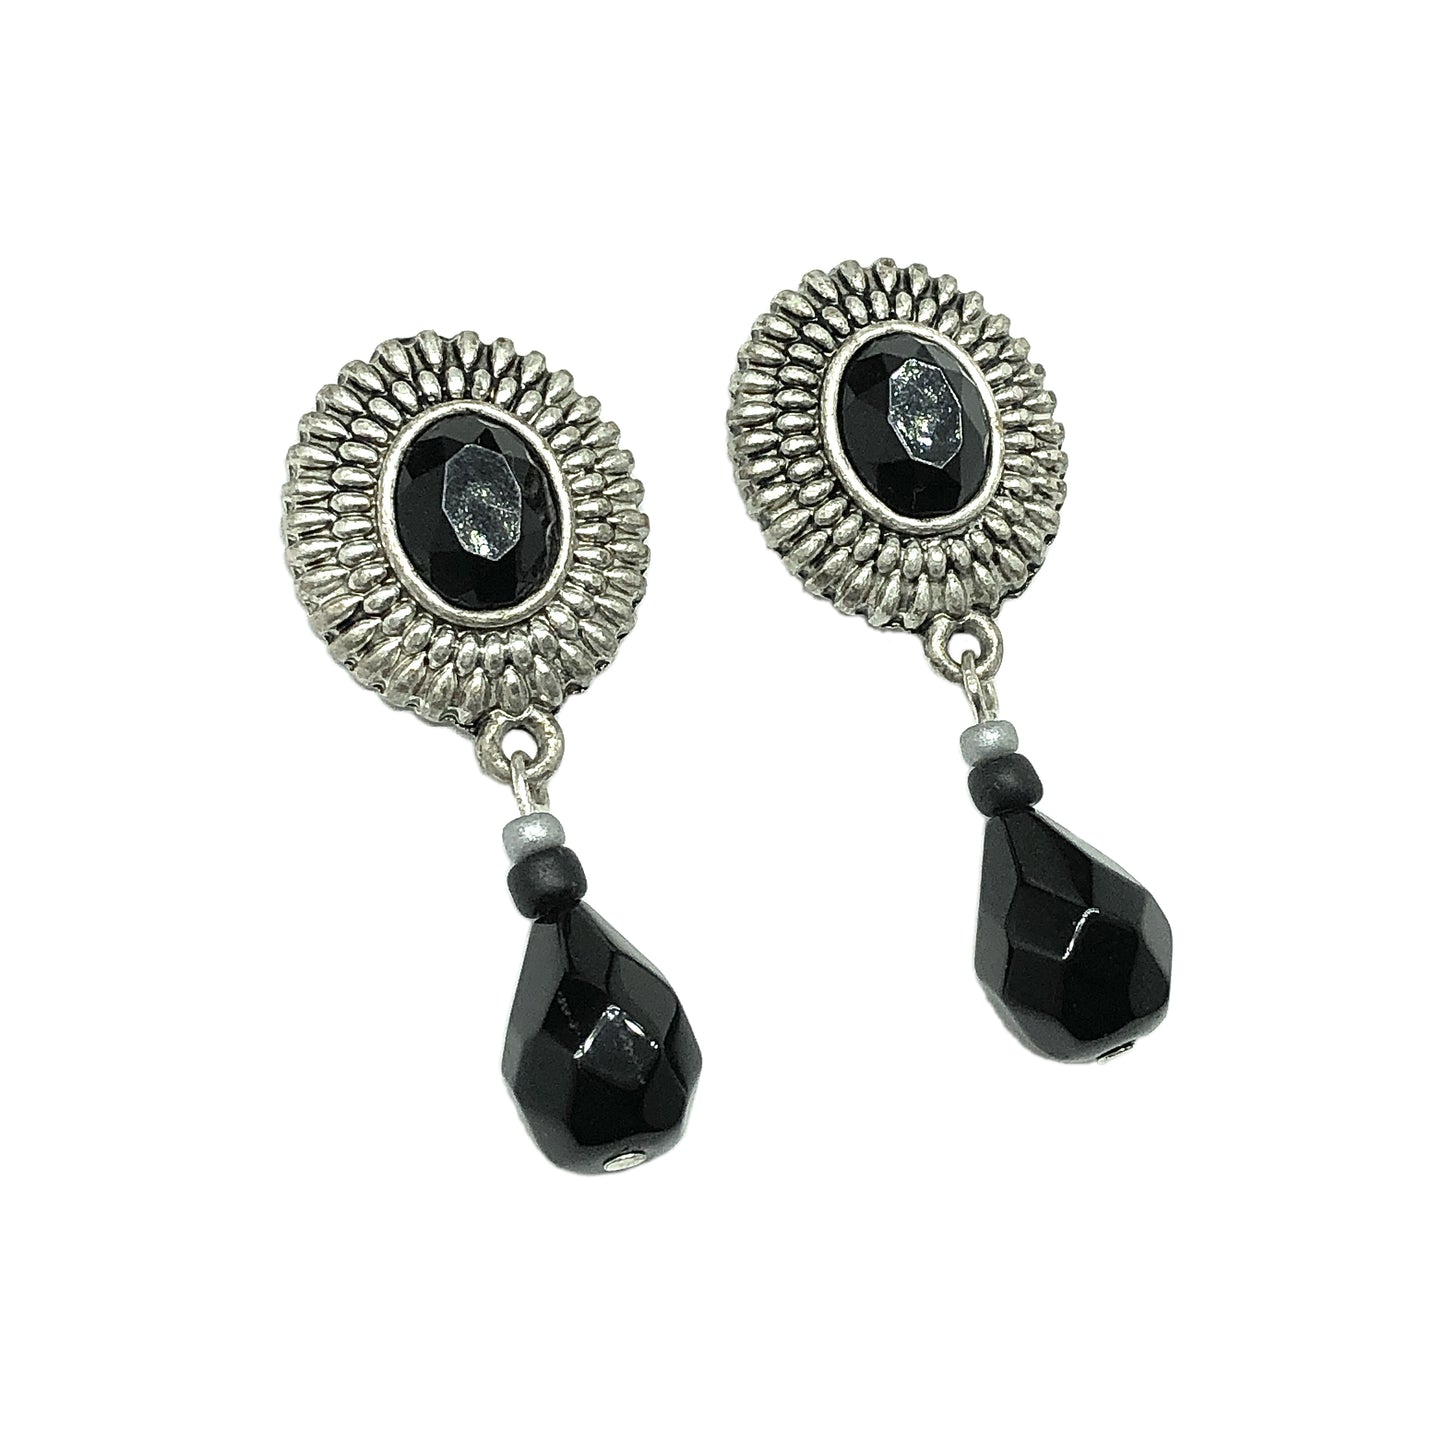 Blingschlingers - Satiny Silver Sunflower Black Briolette Dangle Style Earrings